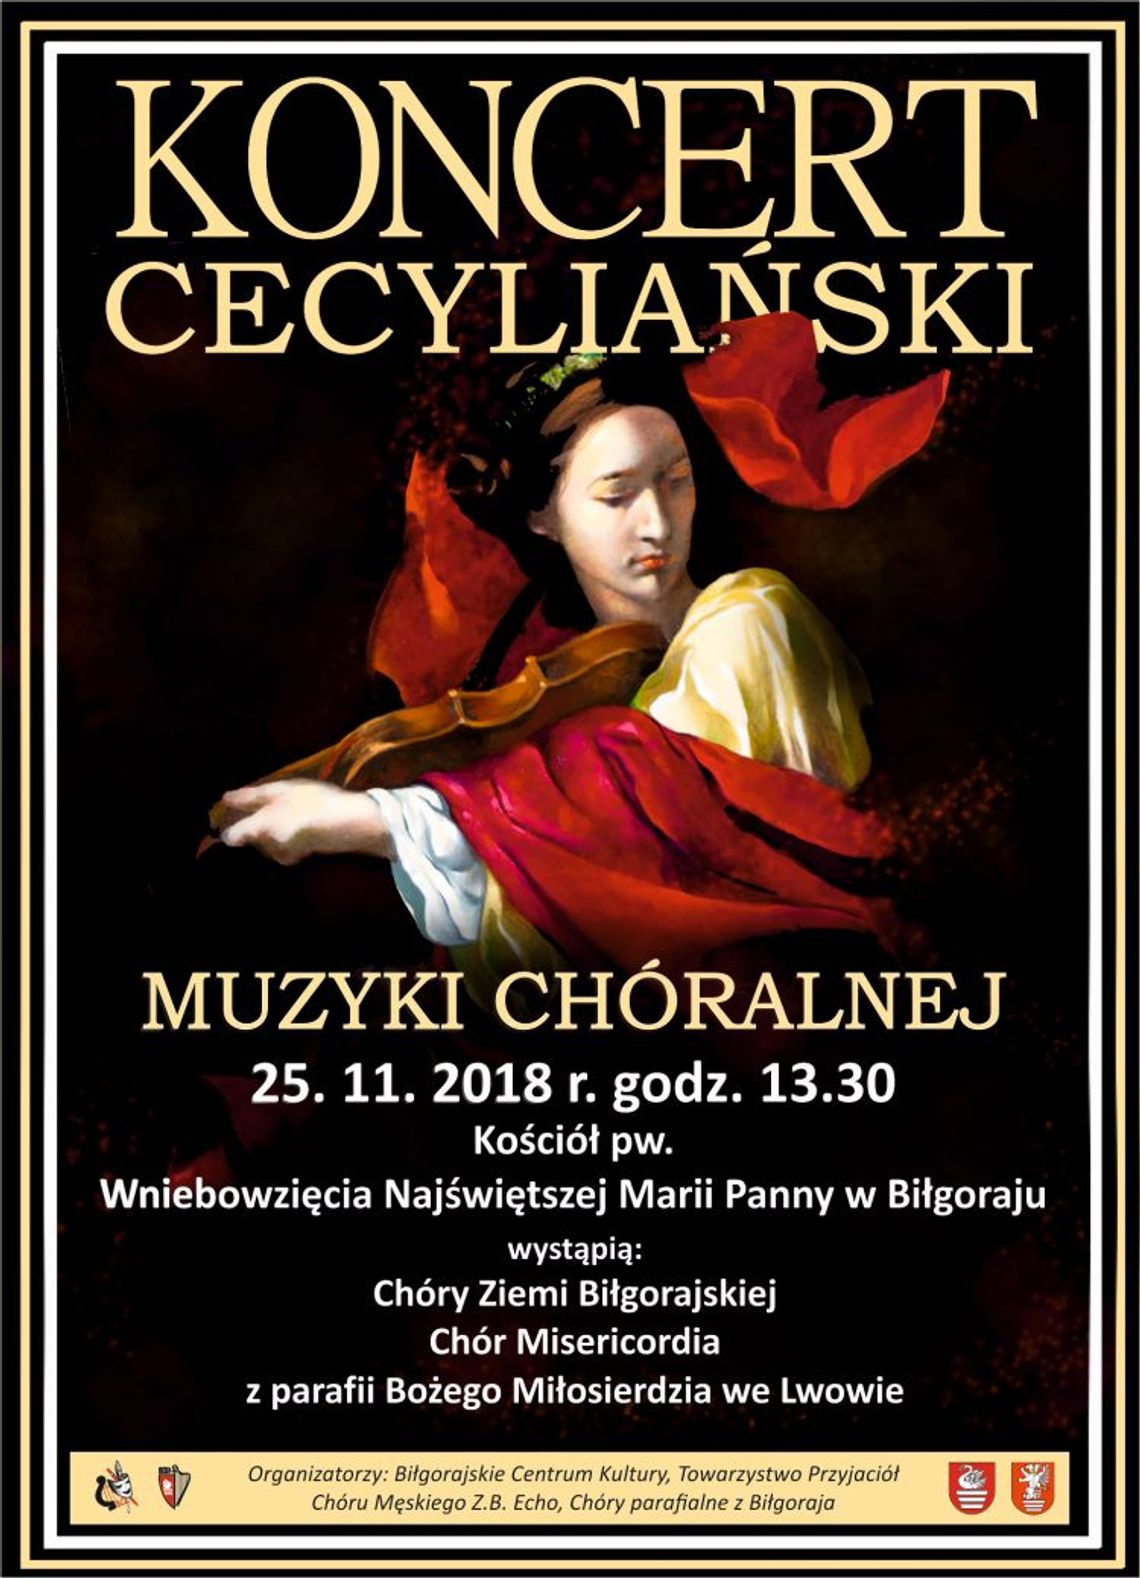 Koncert Cecyliański Muzyki Chóralnej w Biłgoraju